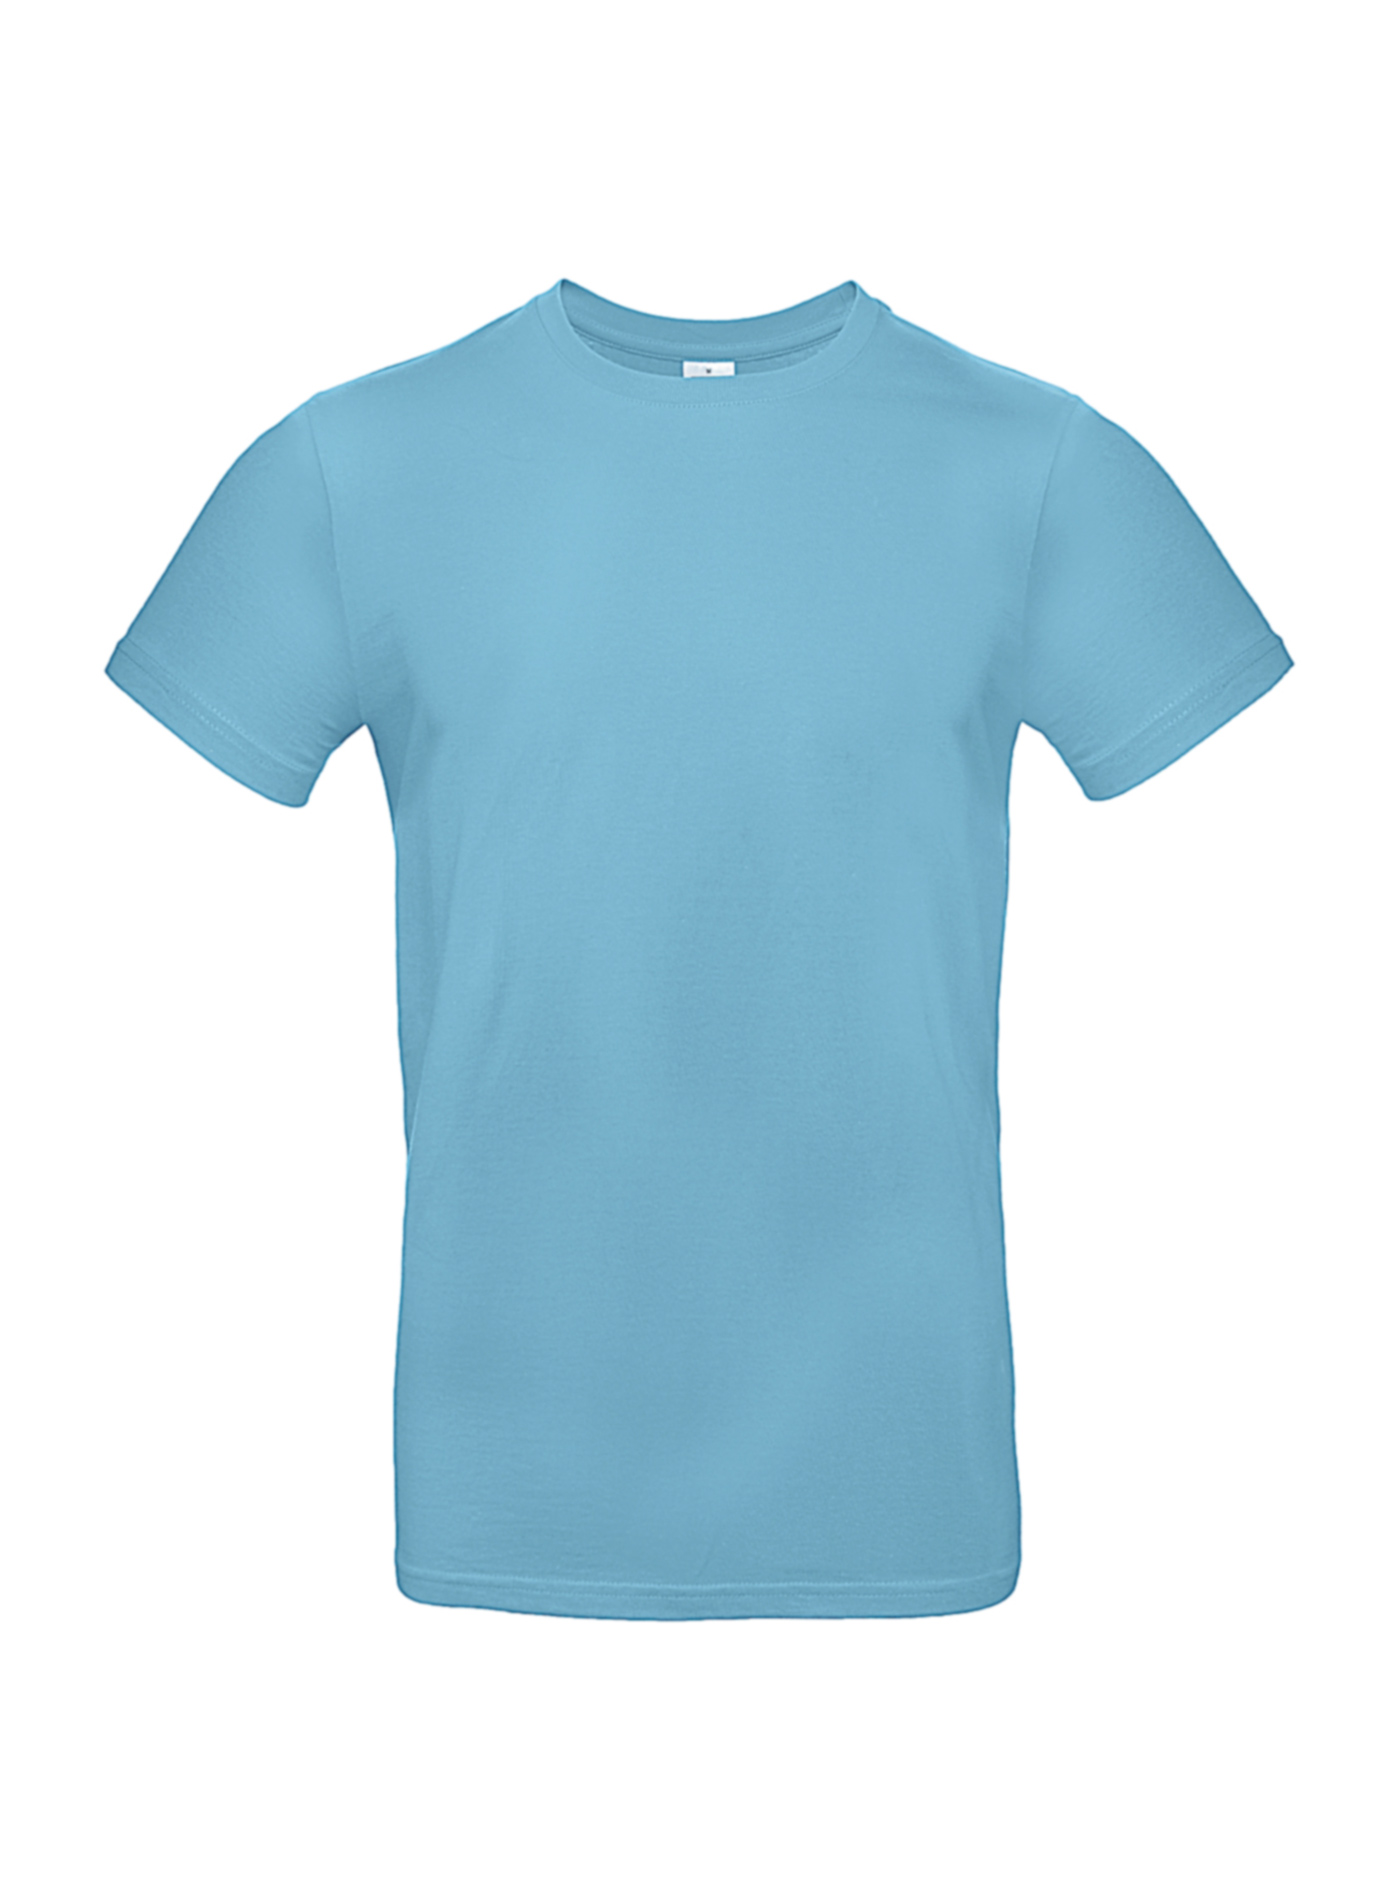 Silnější bavlněné pánské tričko - Tyrkysově modrá XXL